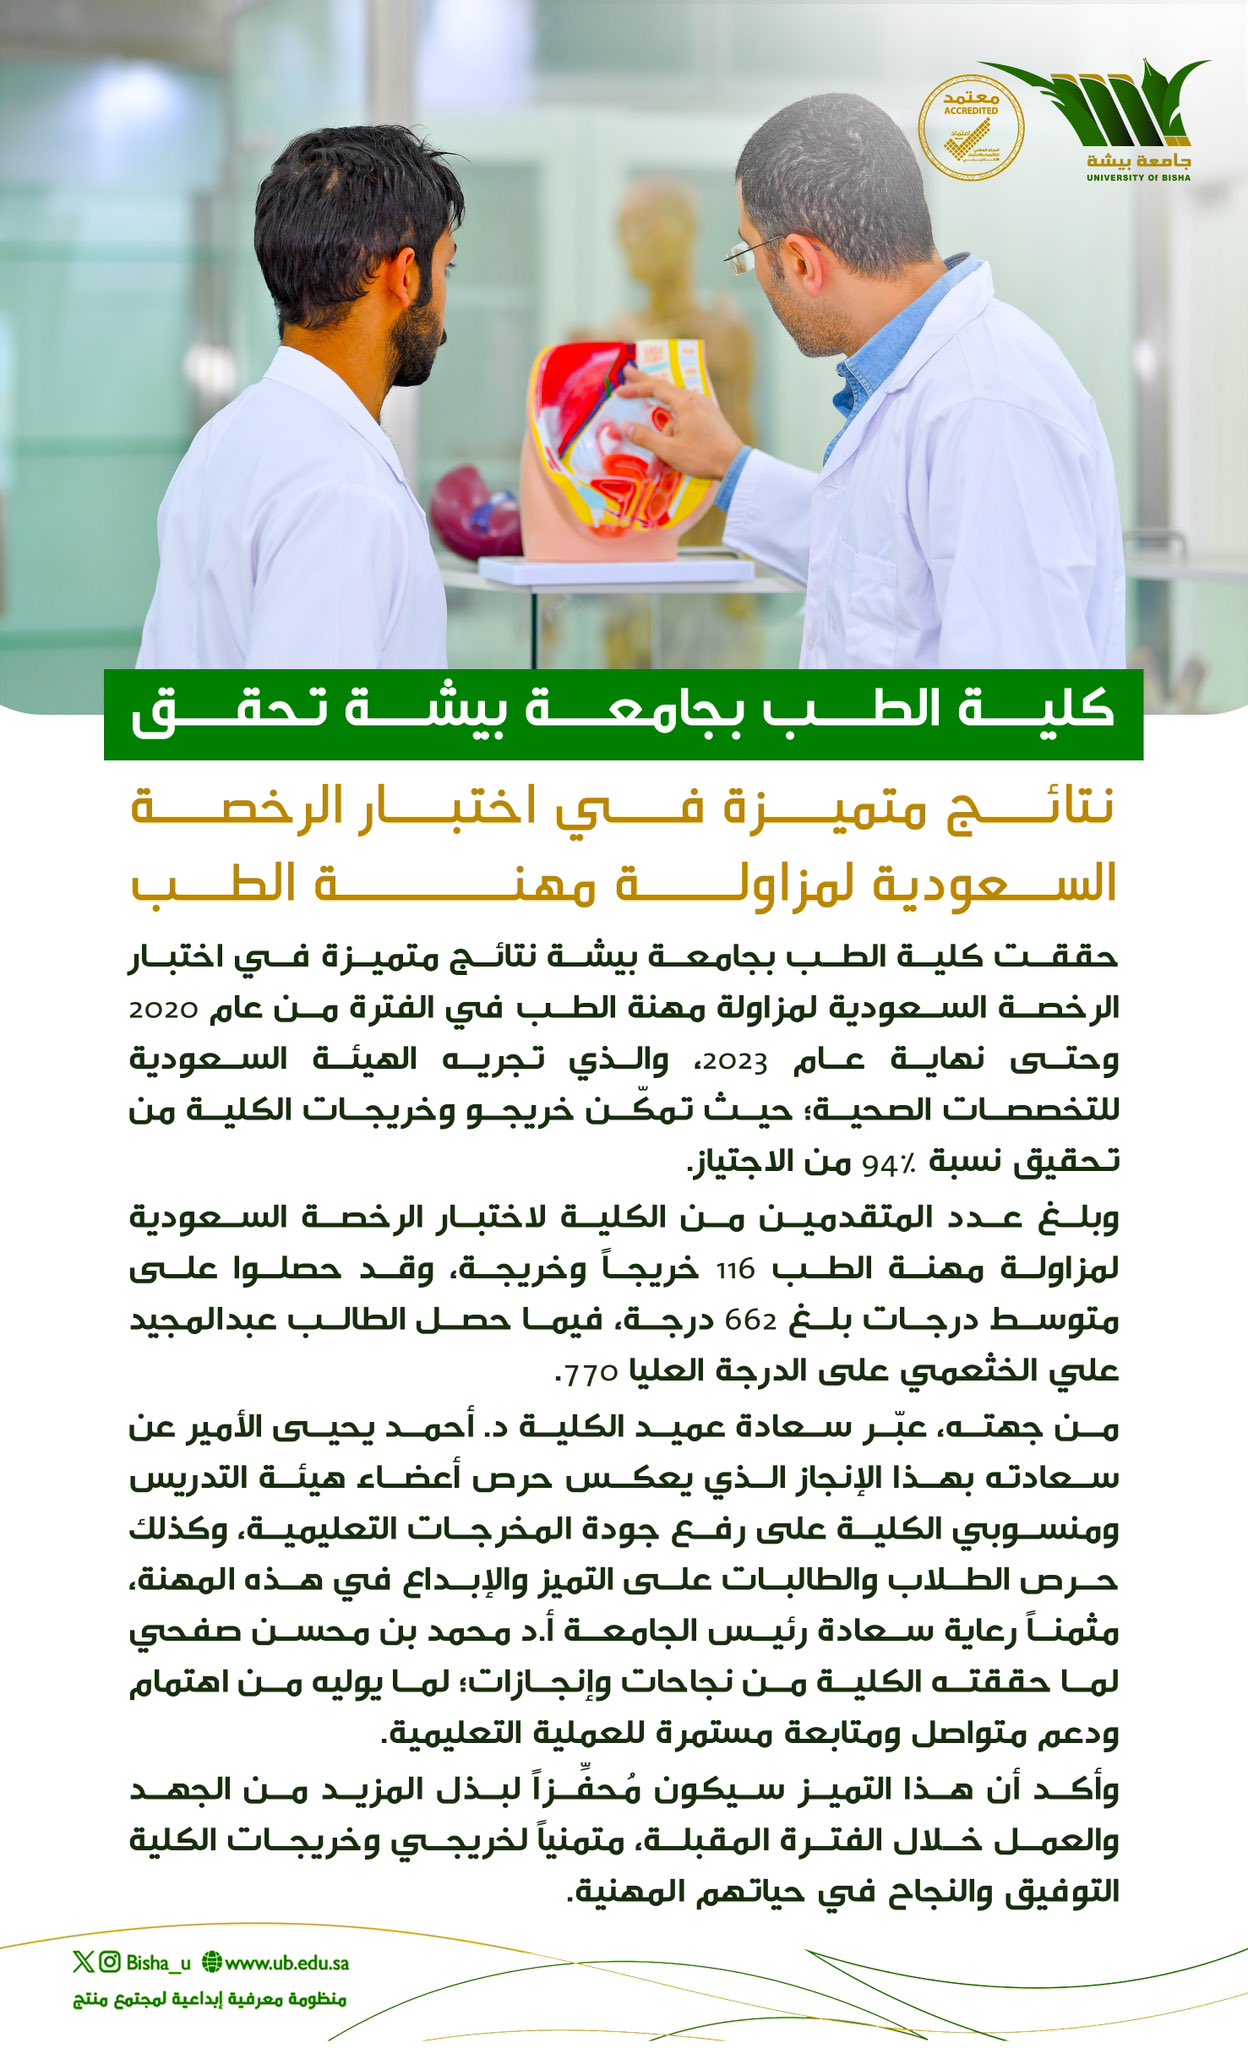 كلية الطب تحقق نتائج متميزة في اختبار الرخصة السعودية لمزاولة مهنة الطب